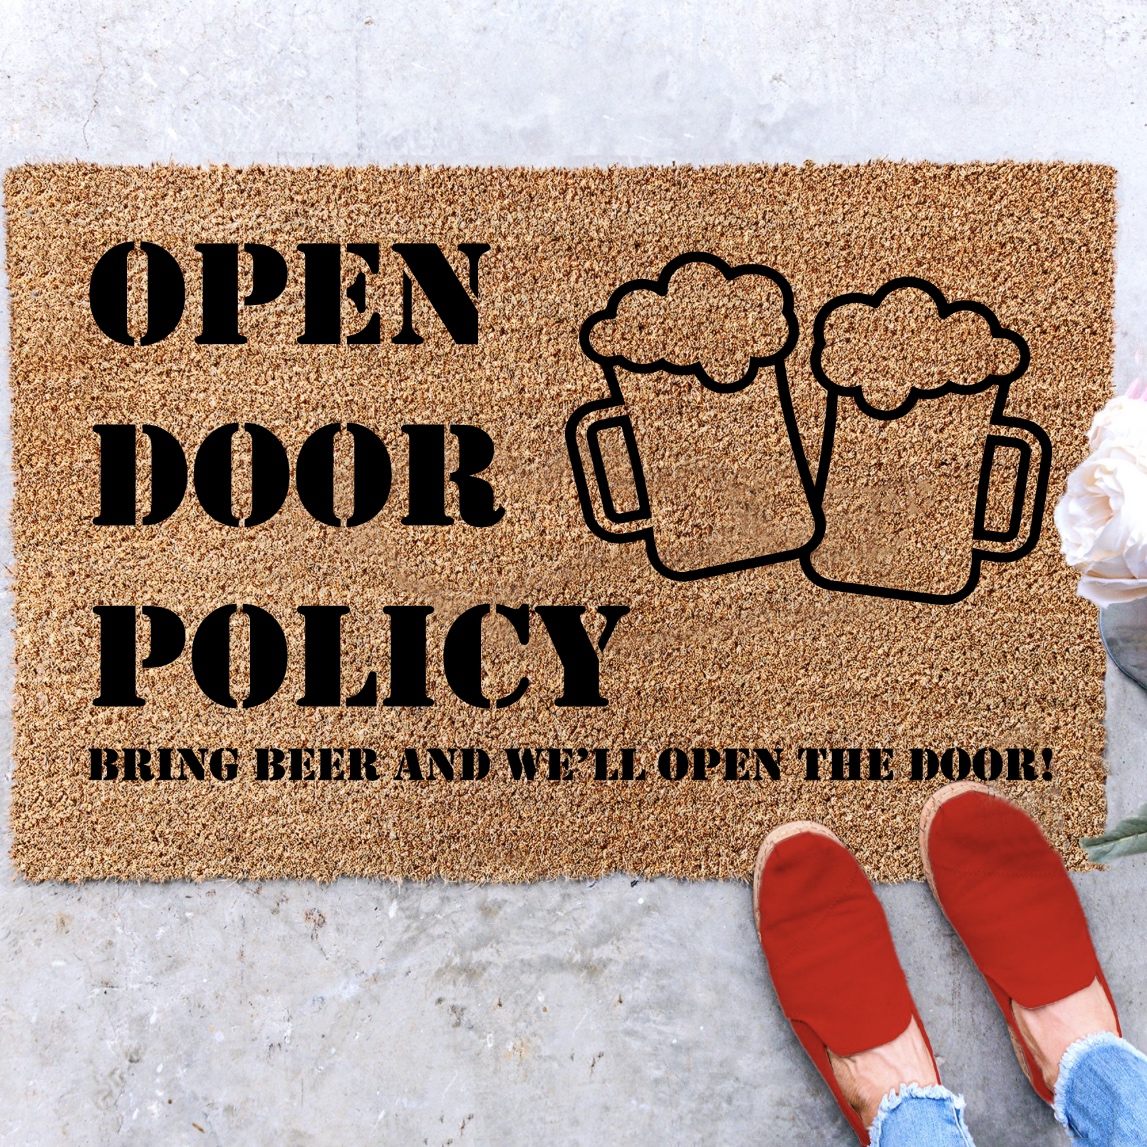 http://goimagine.com/images/detailed/894/open_door_policy__org.jpg